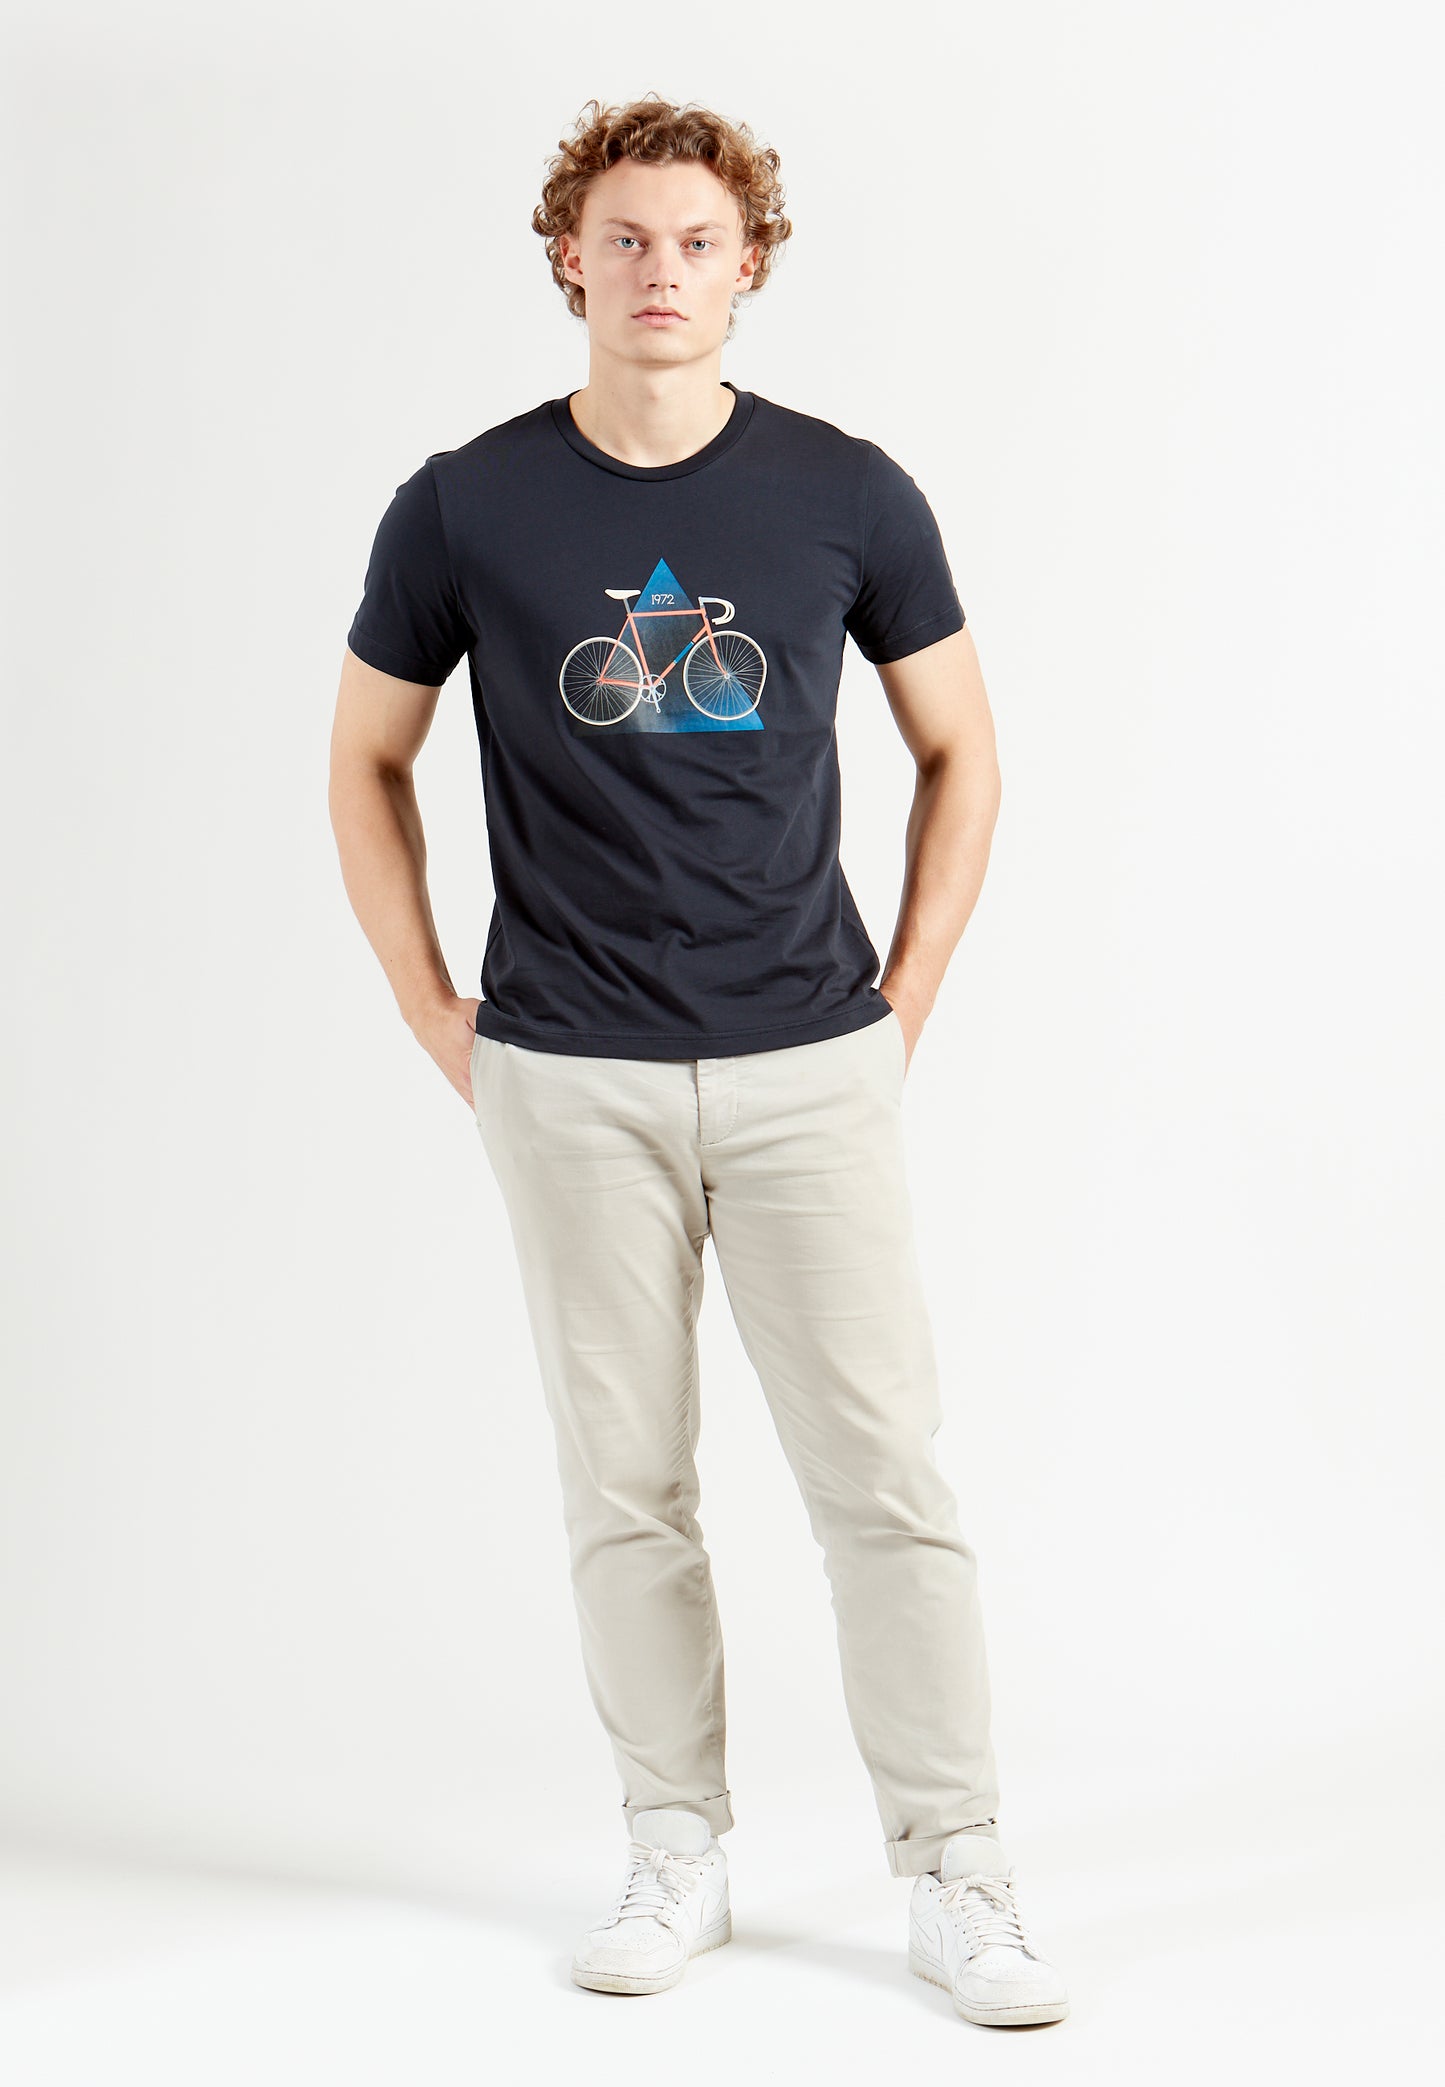 Een Uur 49.43 Hour record bike T-Shirt